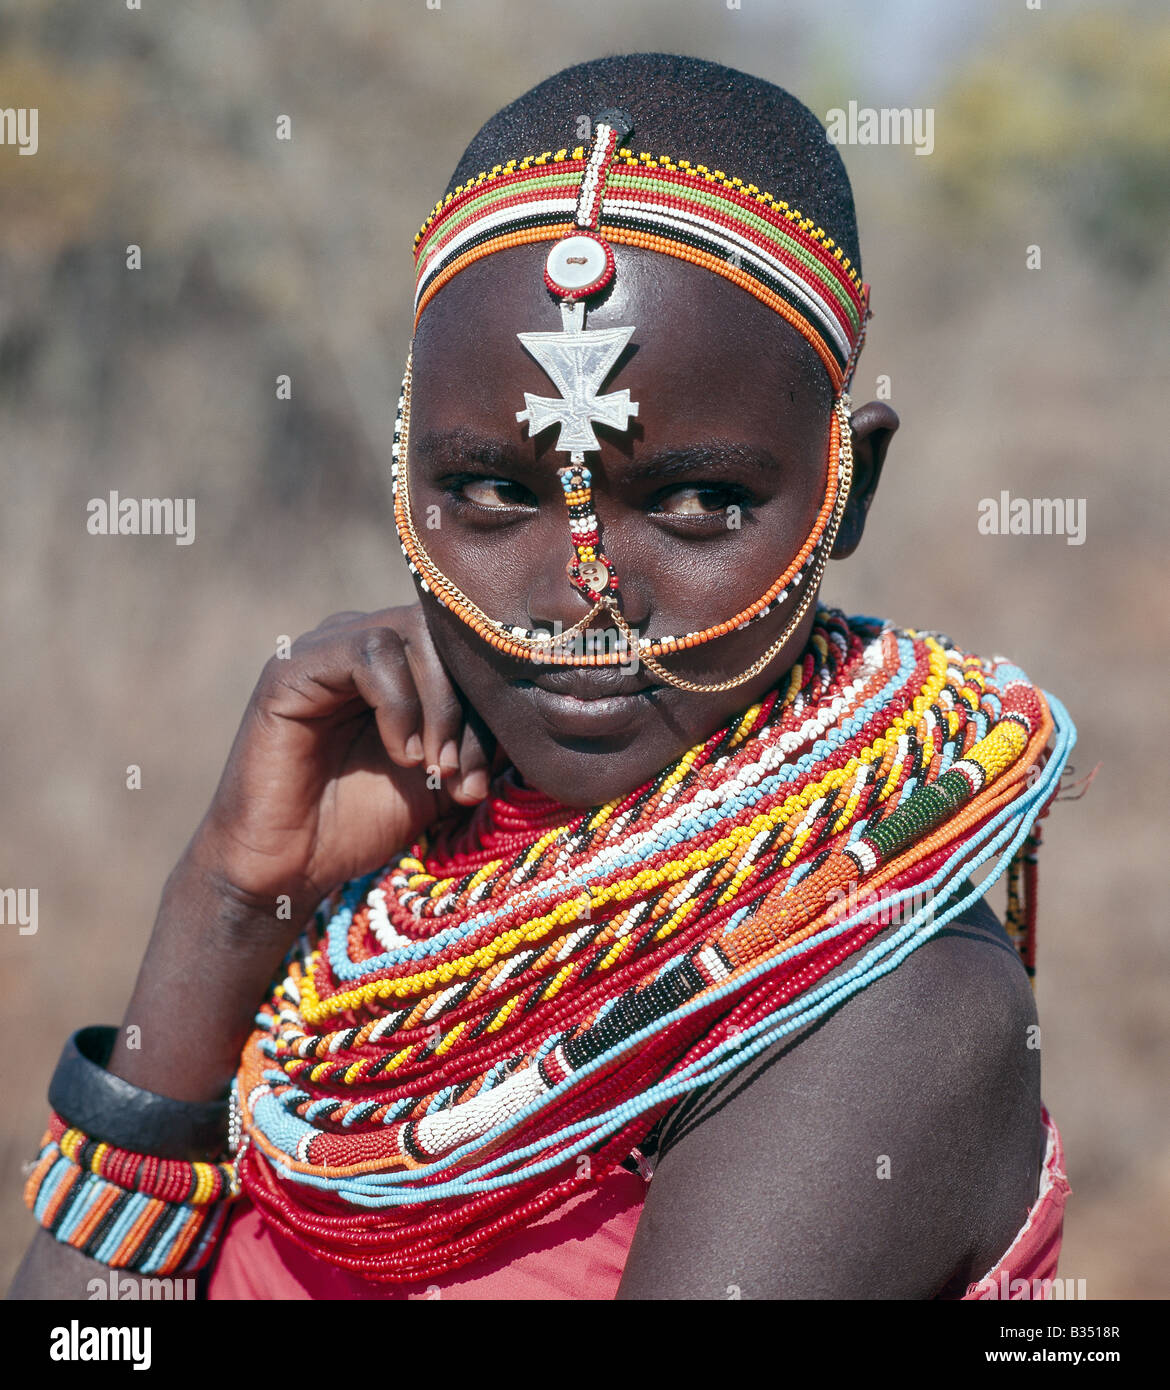 Kenia, Maralal, Maralal. Samburu Mädchen werden Perlenschnüre von ihren Vätern gegeben, wenn sie noch jung sind. Stockfoto